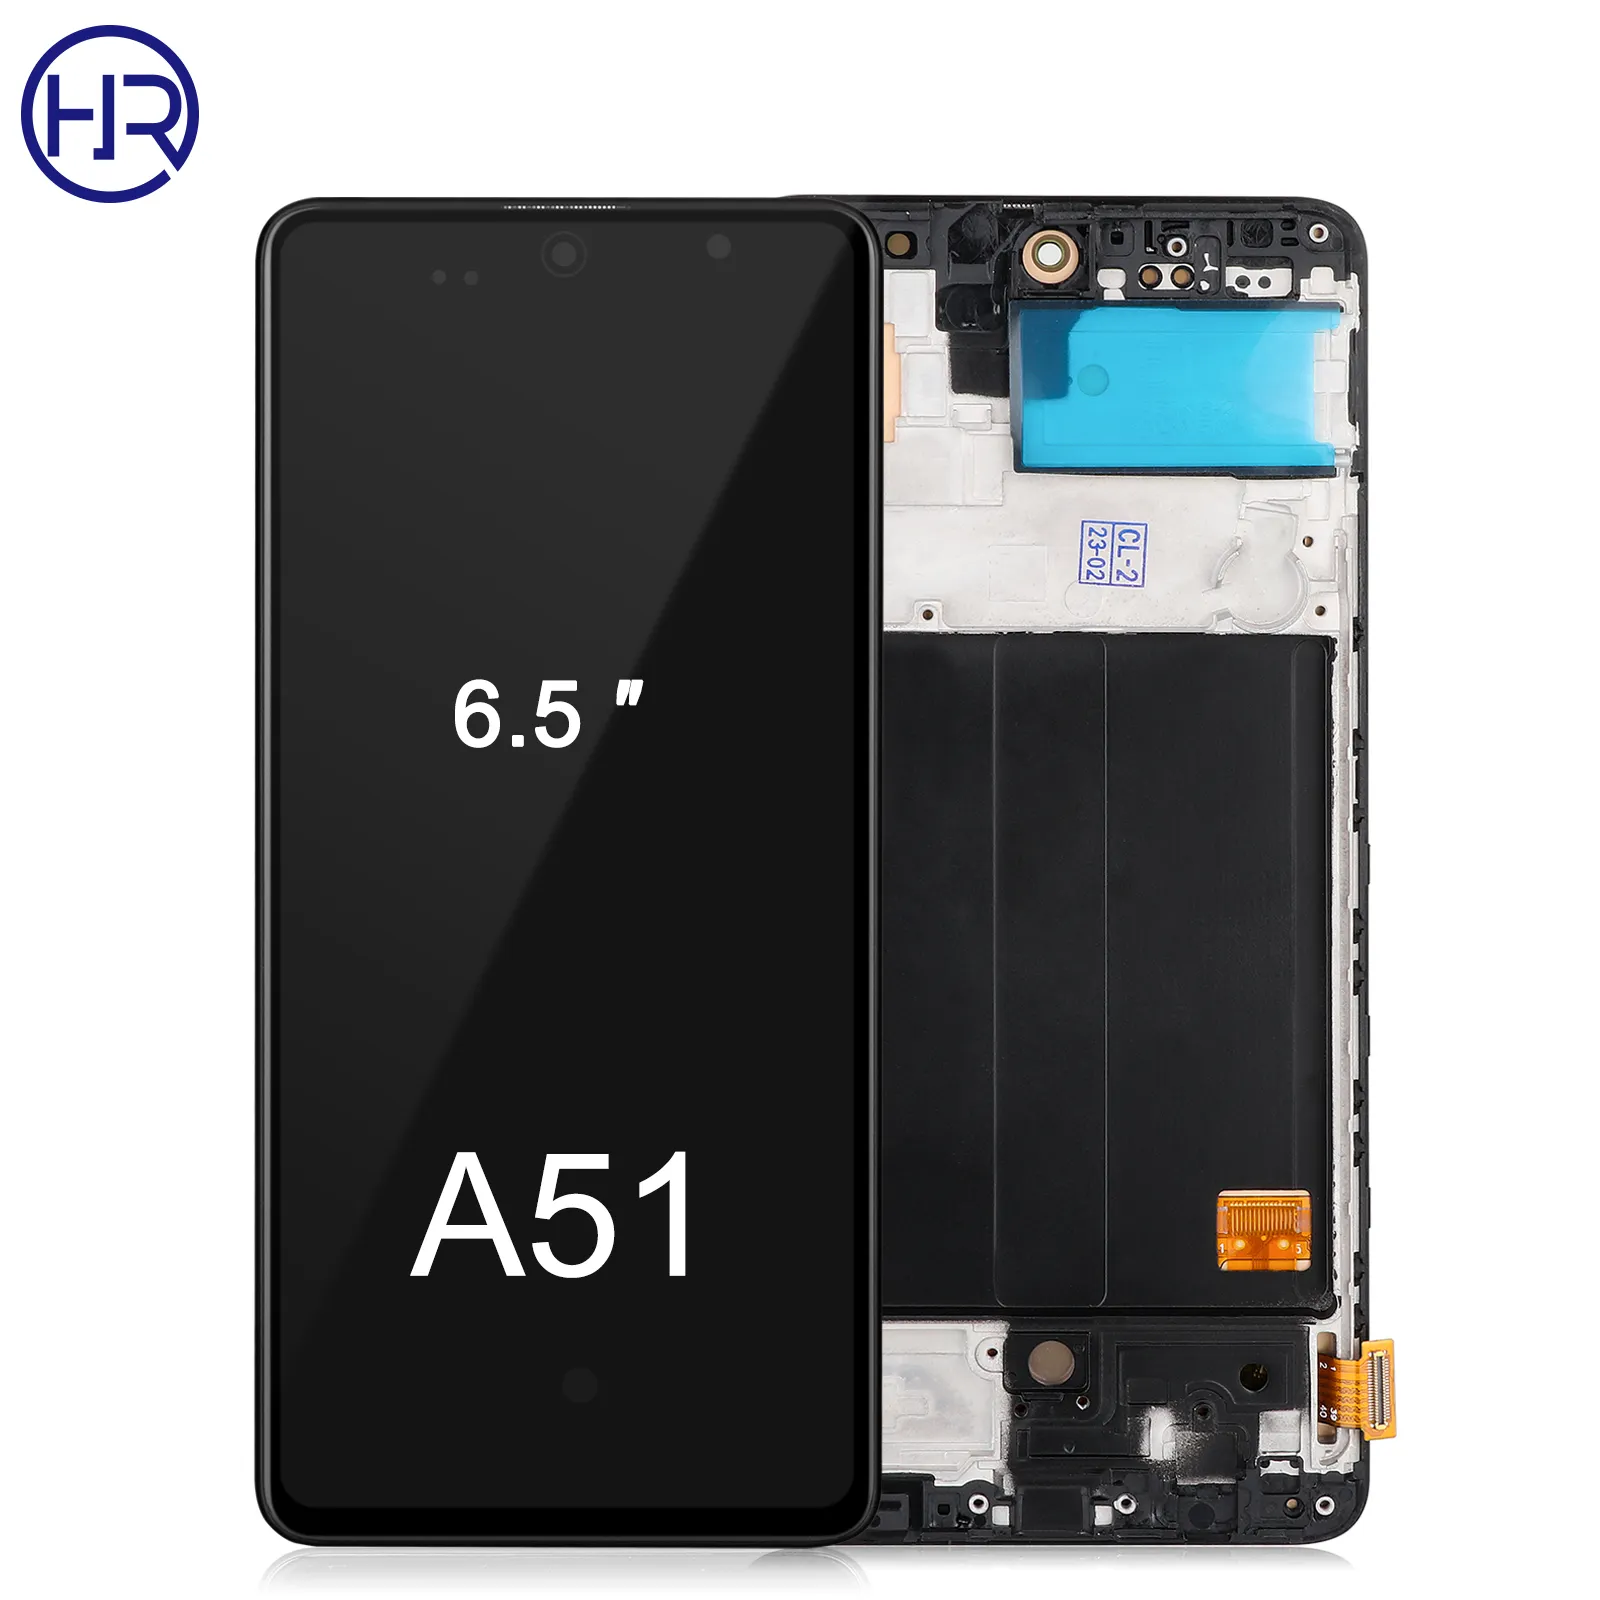 Samsung A51 dokunmatik Lcd ekran ekran Samsung için yedek Galaxy A51 için orijinal boyutu OLED malzeme cep telefonu ekran